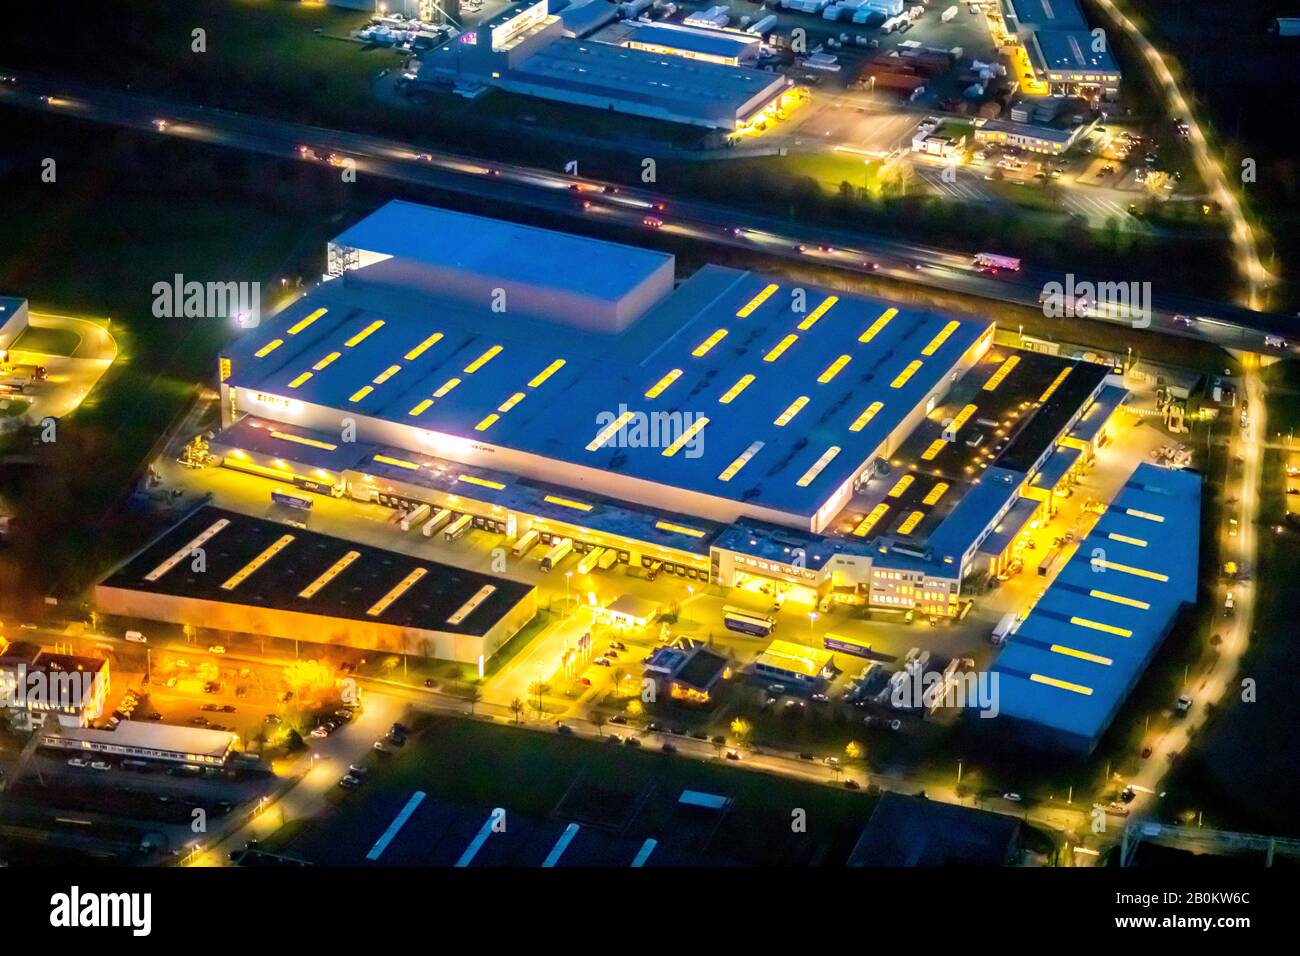 Luftbild nachts über Hamm, Industriegebiet Hamm Uentrop, CS Parts Logistics  GmbH, Logistikdienst Claas Service und Parts GmbH, an der Autobahn A  Stockfotografie - Alamy